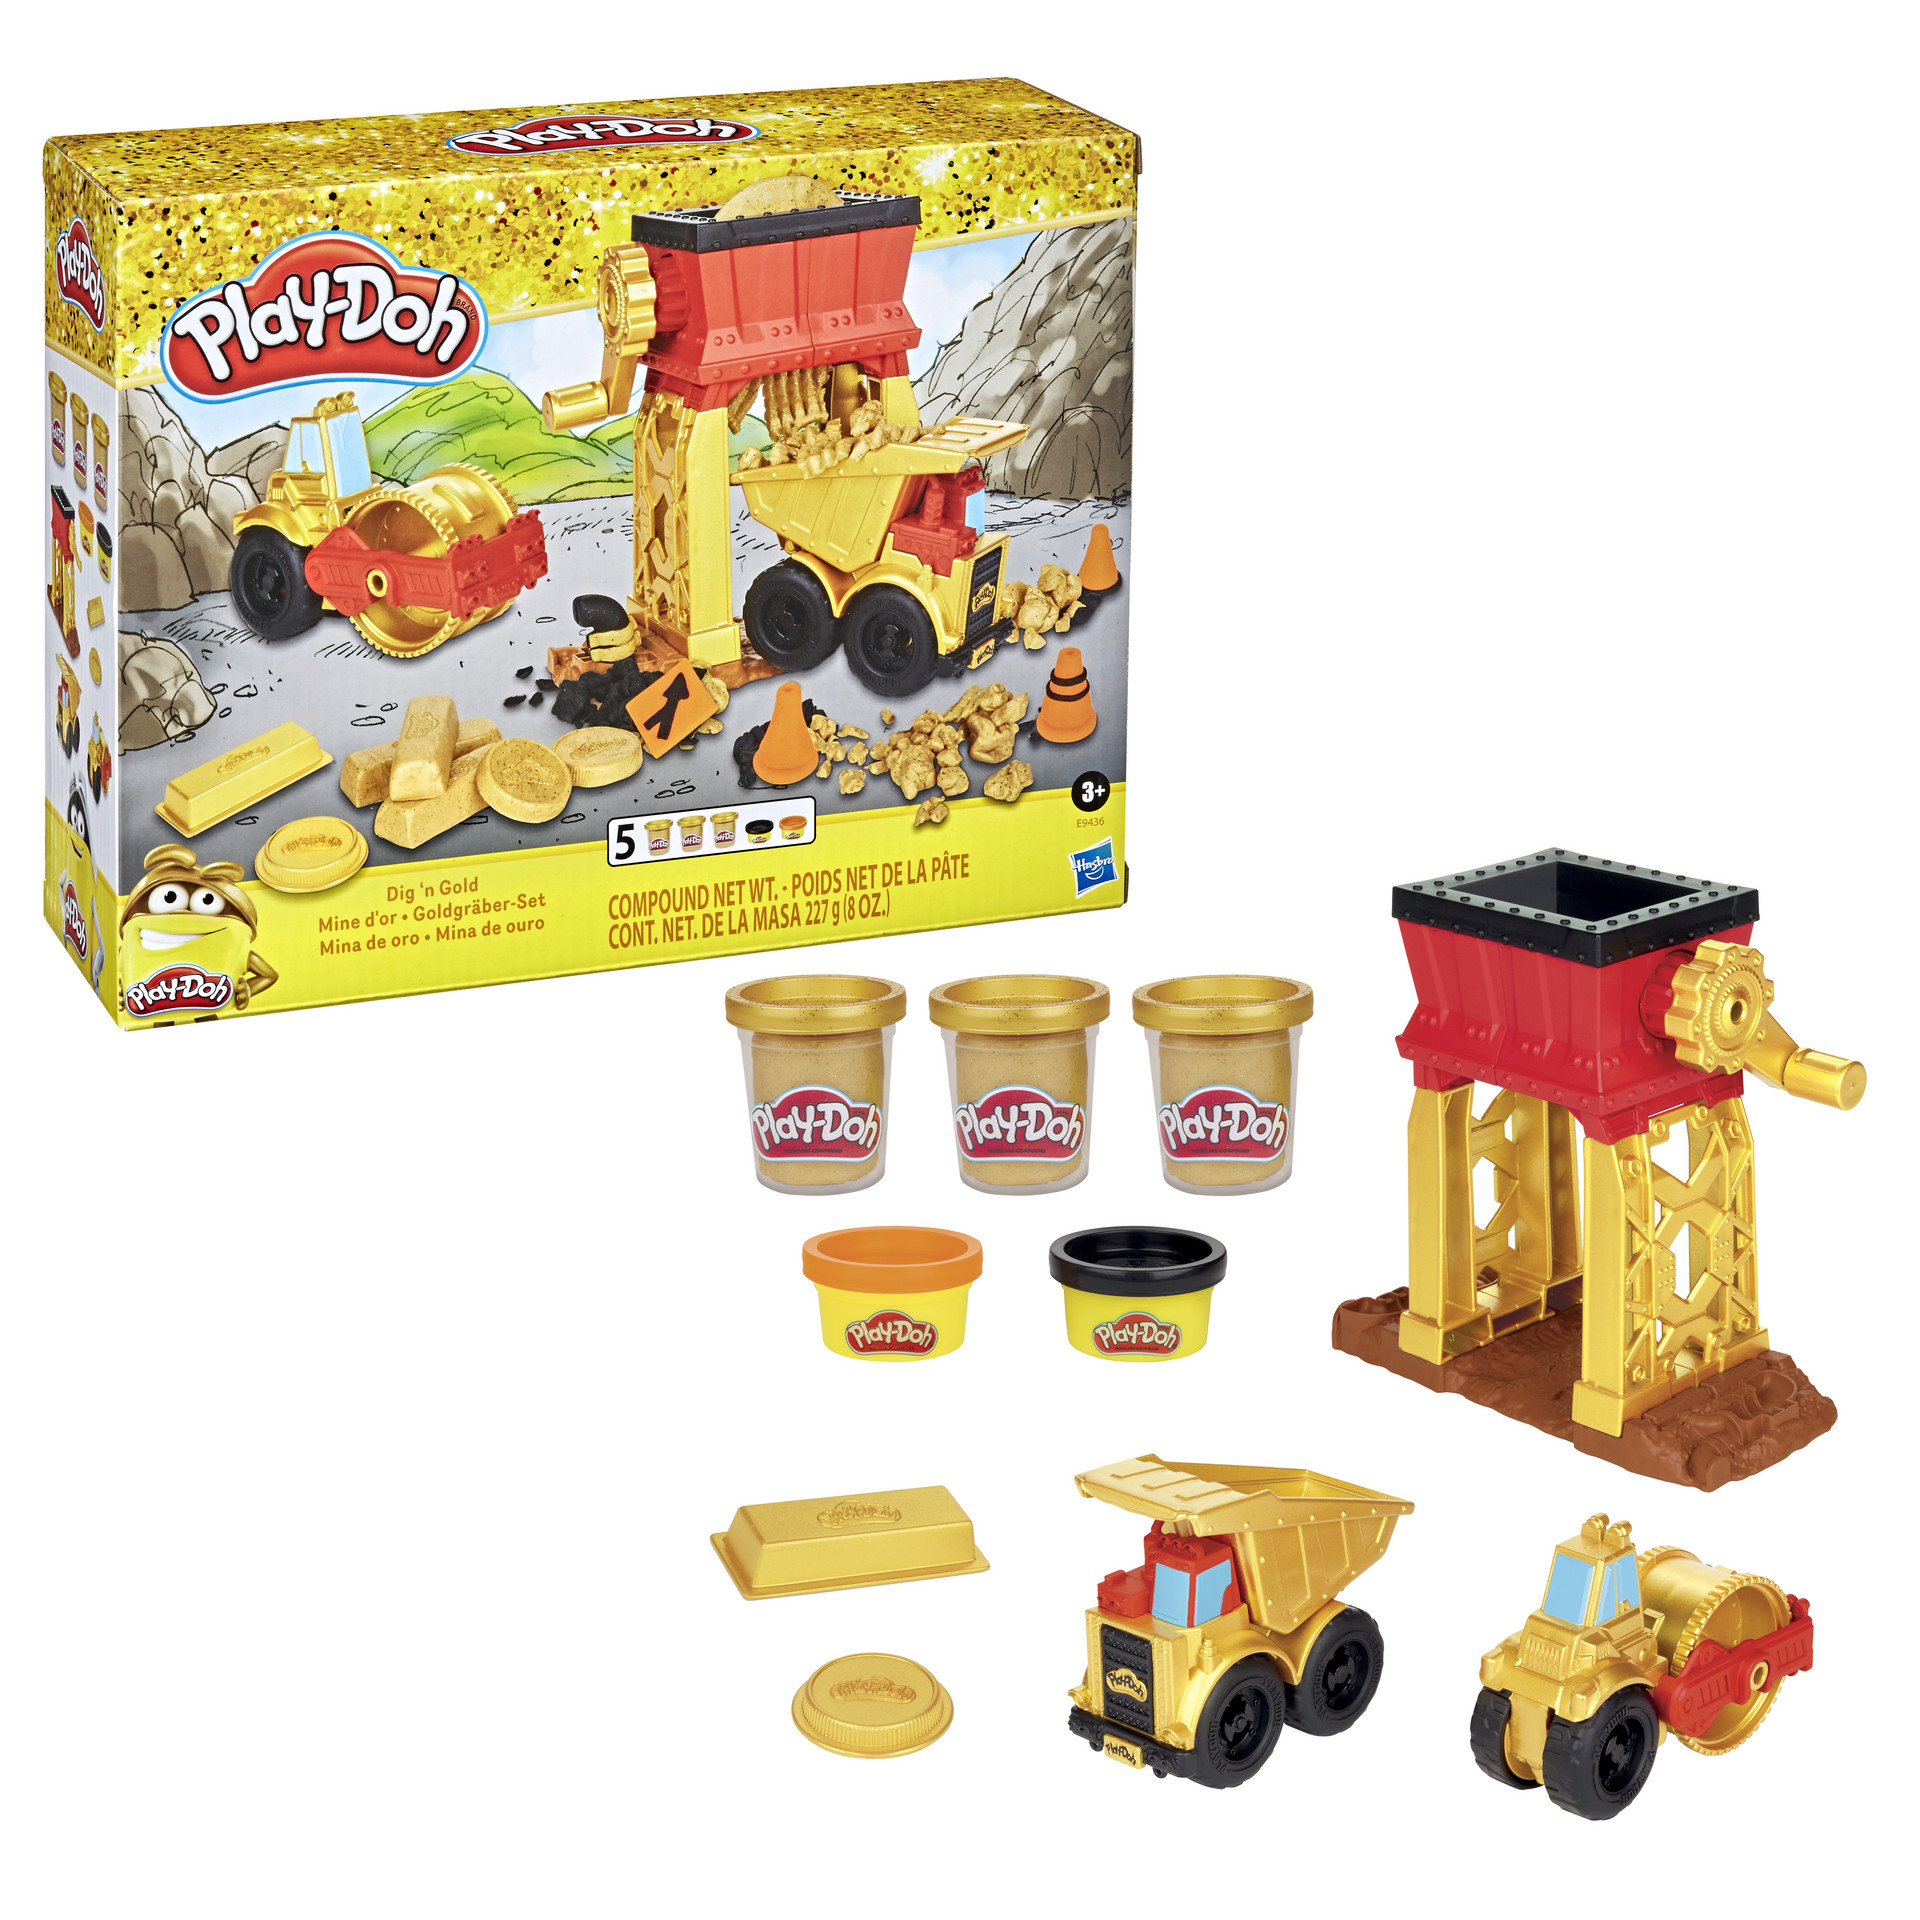 Play-Doh Игровой набор "Золотооискатель"